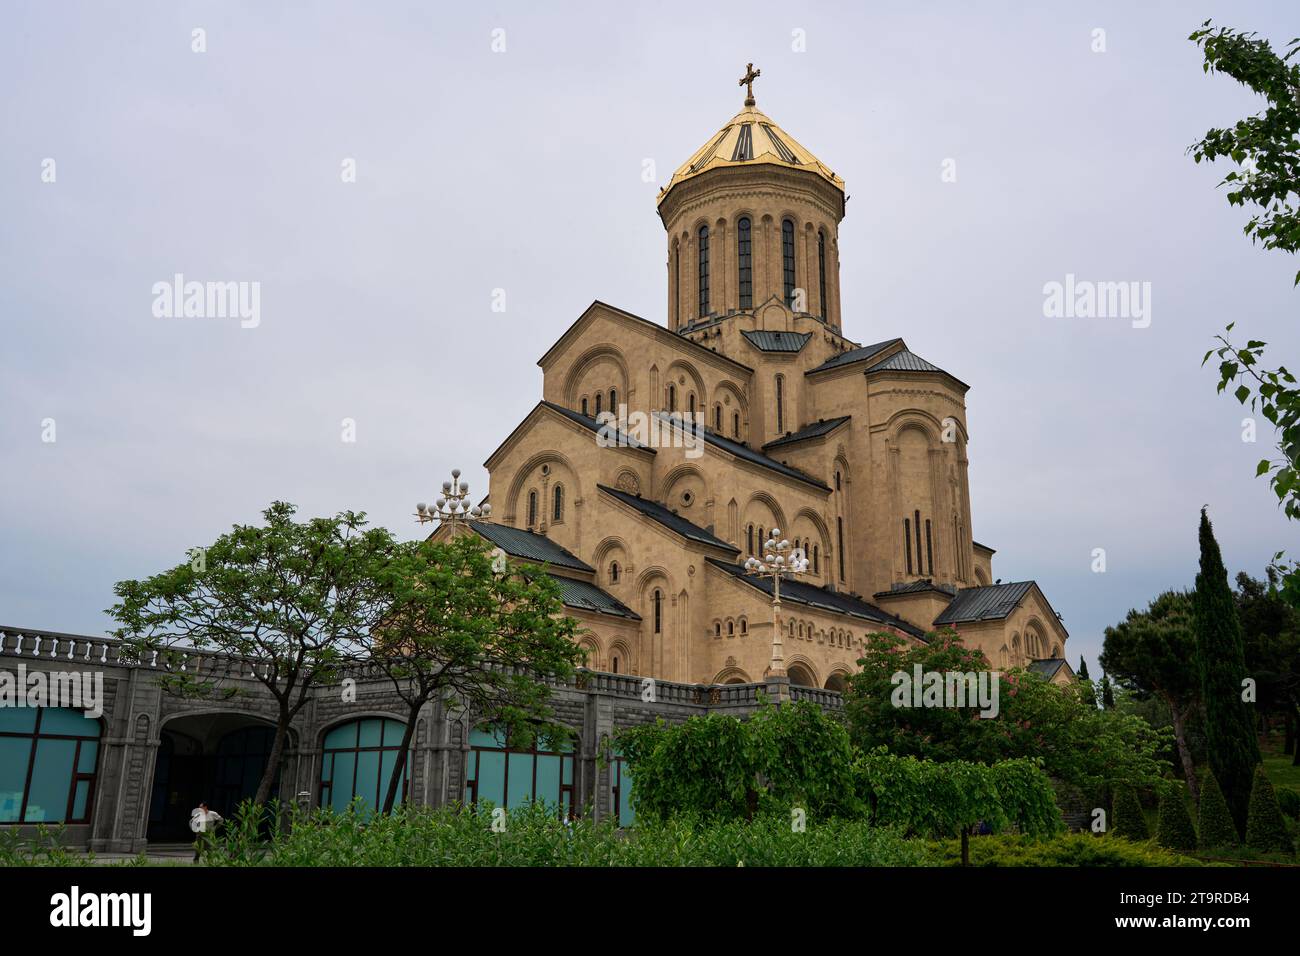 Sameba-Kathedrale, Holy Trinity Church, Heilige Dreifaltigkeitskirche, Stadtteil Awlabari, armenisches Viertel, Avlabari, Tiflis, Georgien Stock Photo